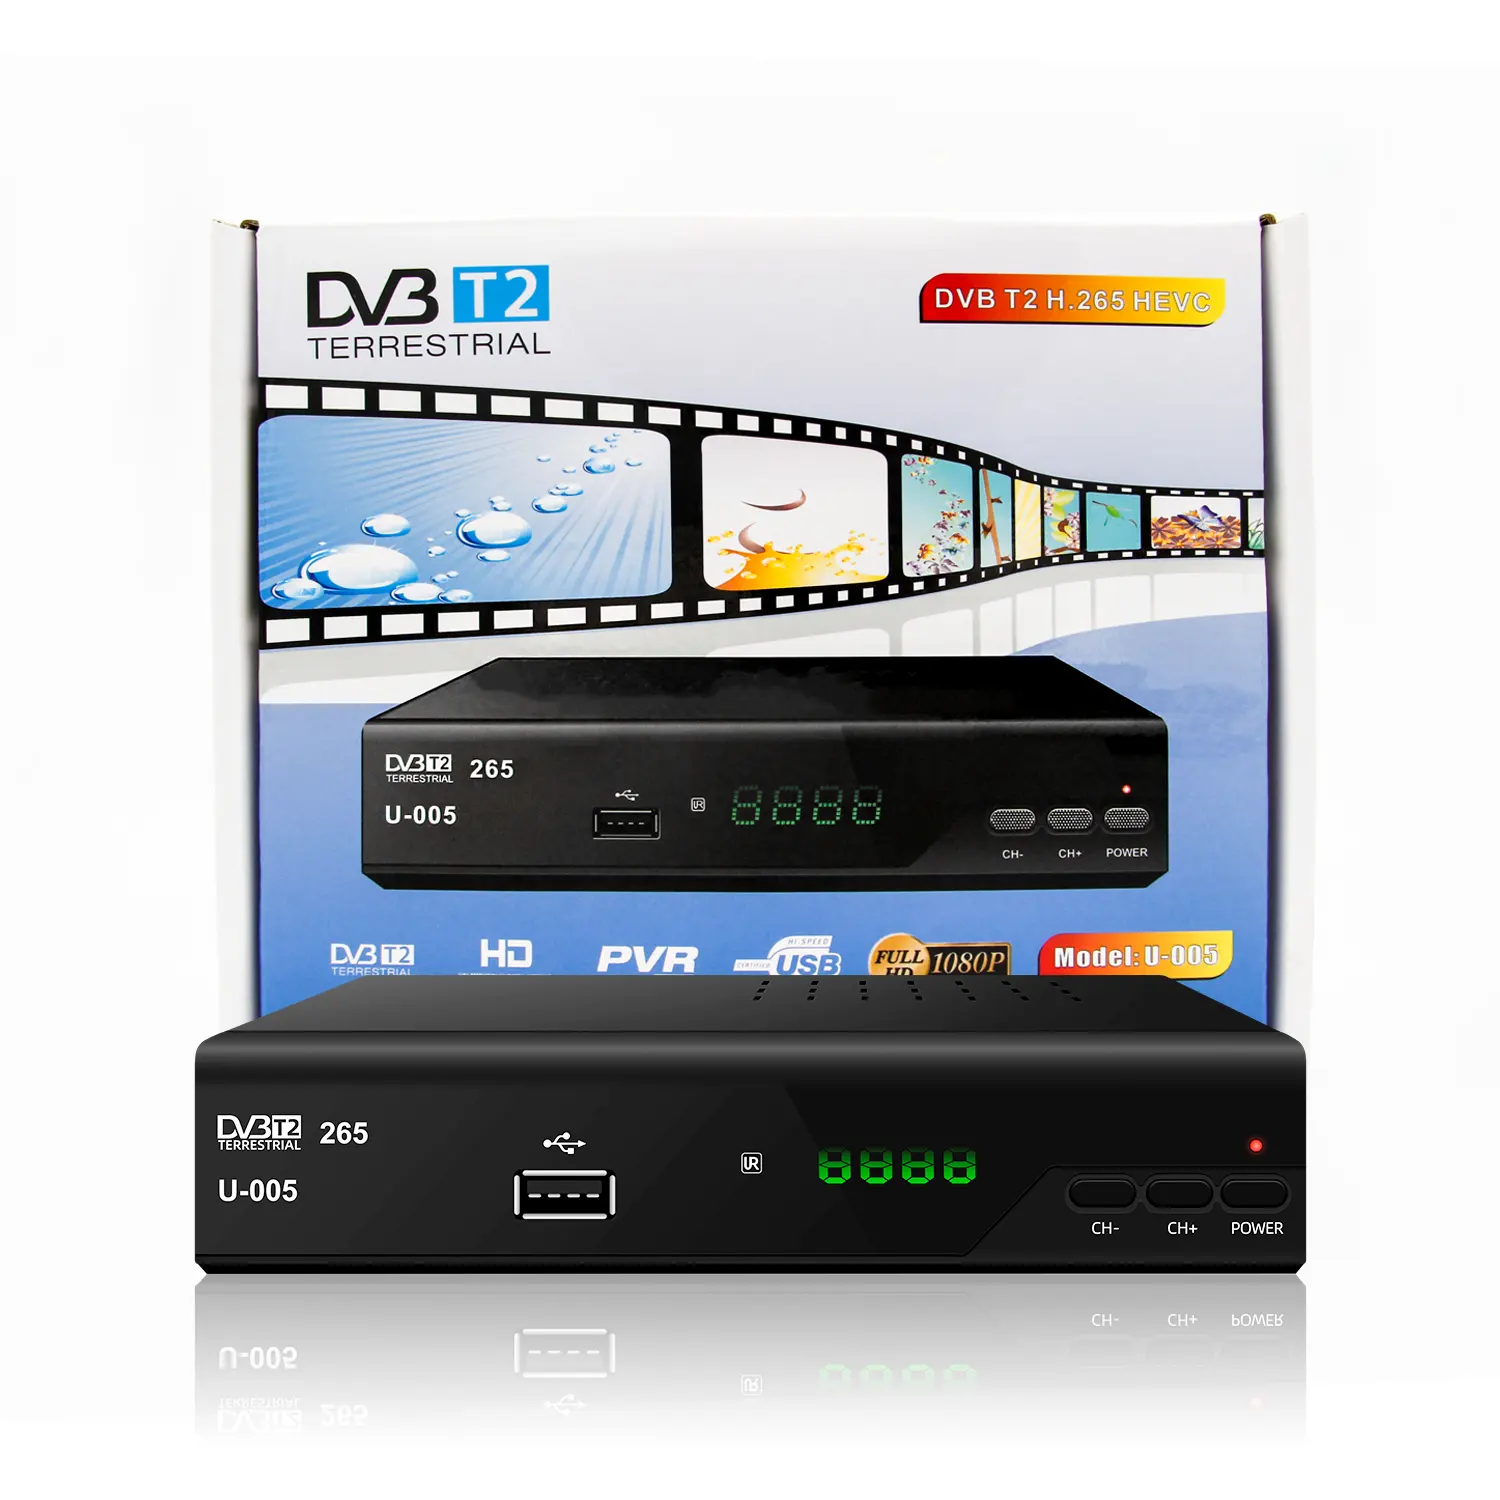 Productos listos para la transmisión digital de vídeo digital HD, transmisión digital, CA, 100V-240V, antena interior, receptor de España, TDT, DVB T2, 1 unidad, 1 unidad